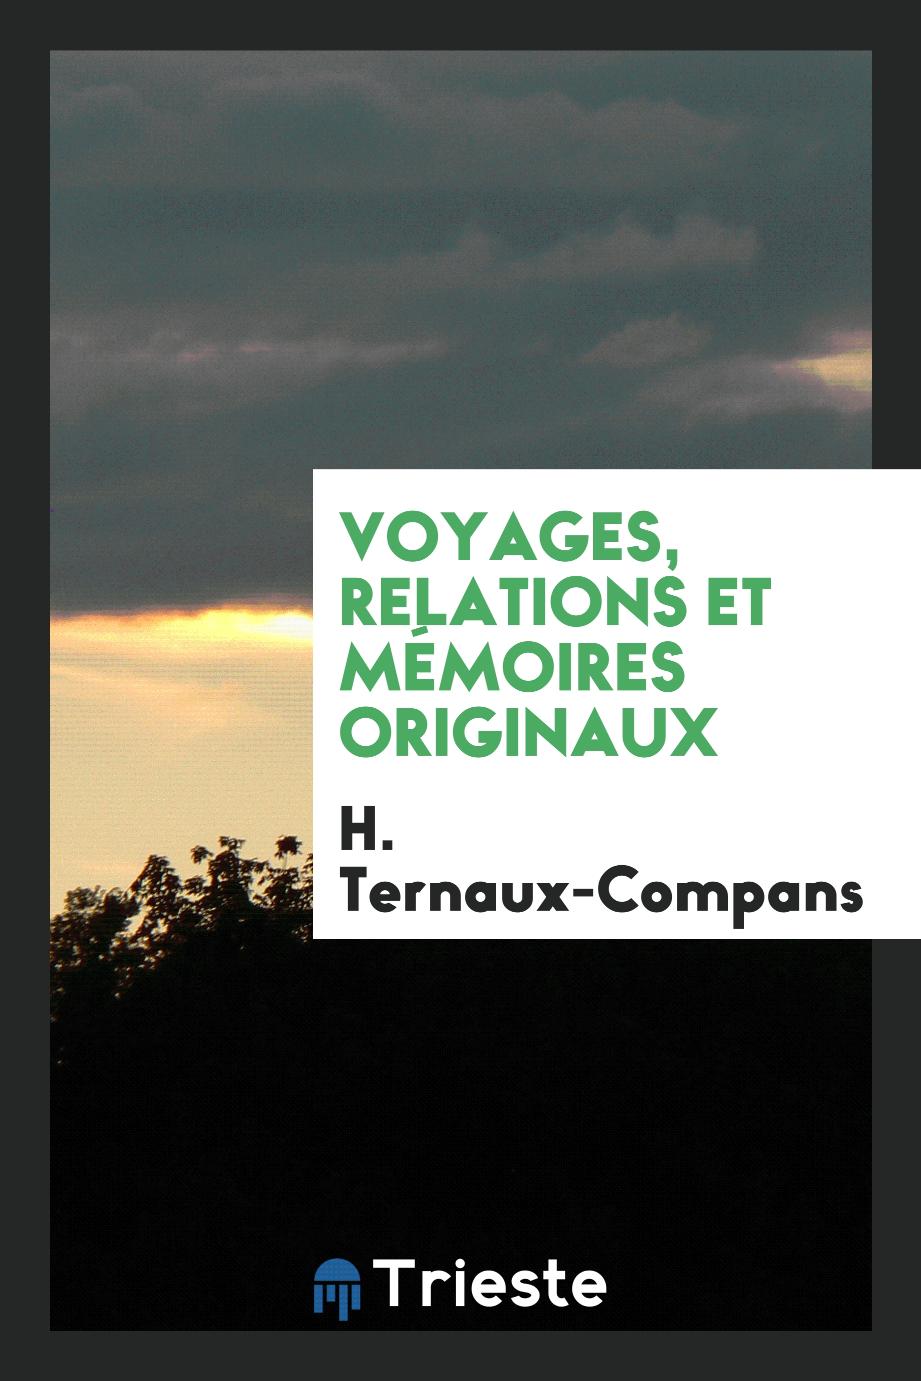 Voyages, relations et mémoires originaux